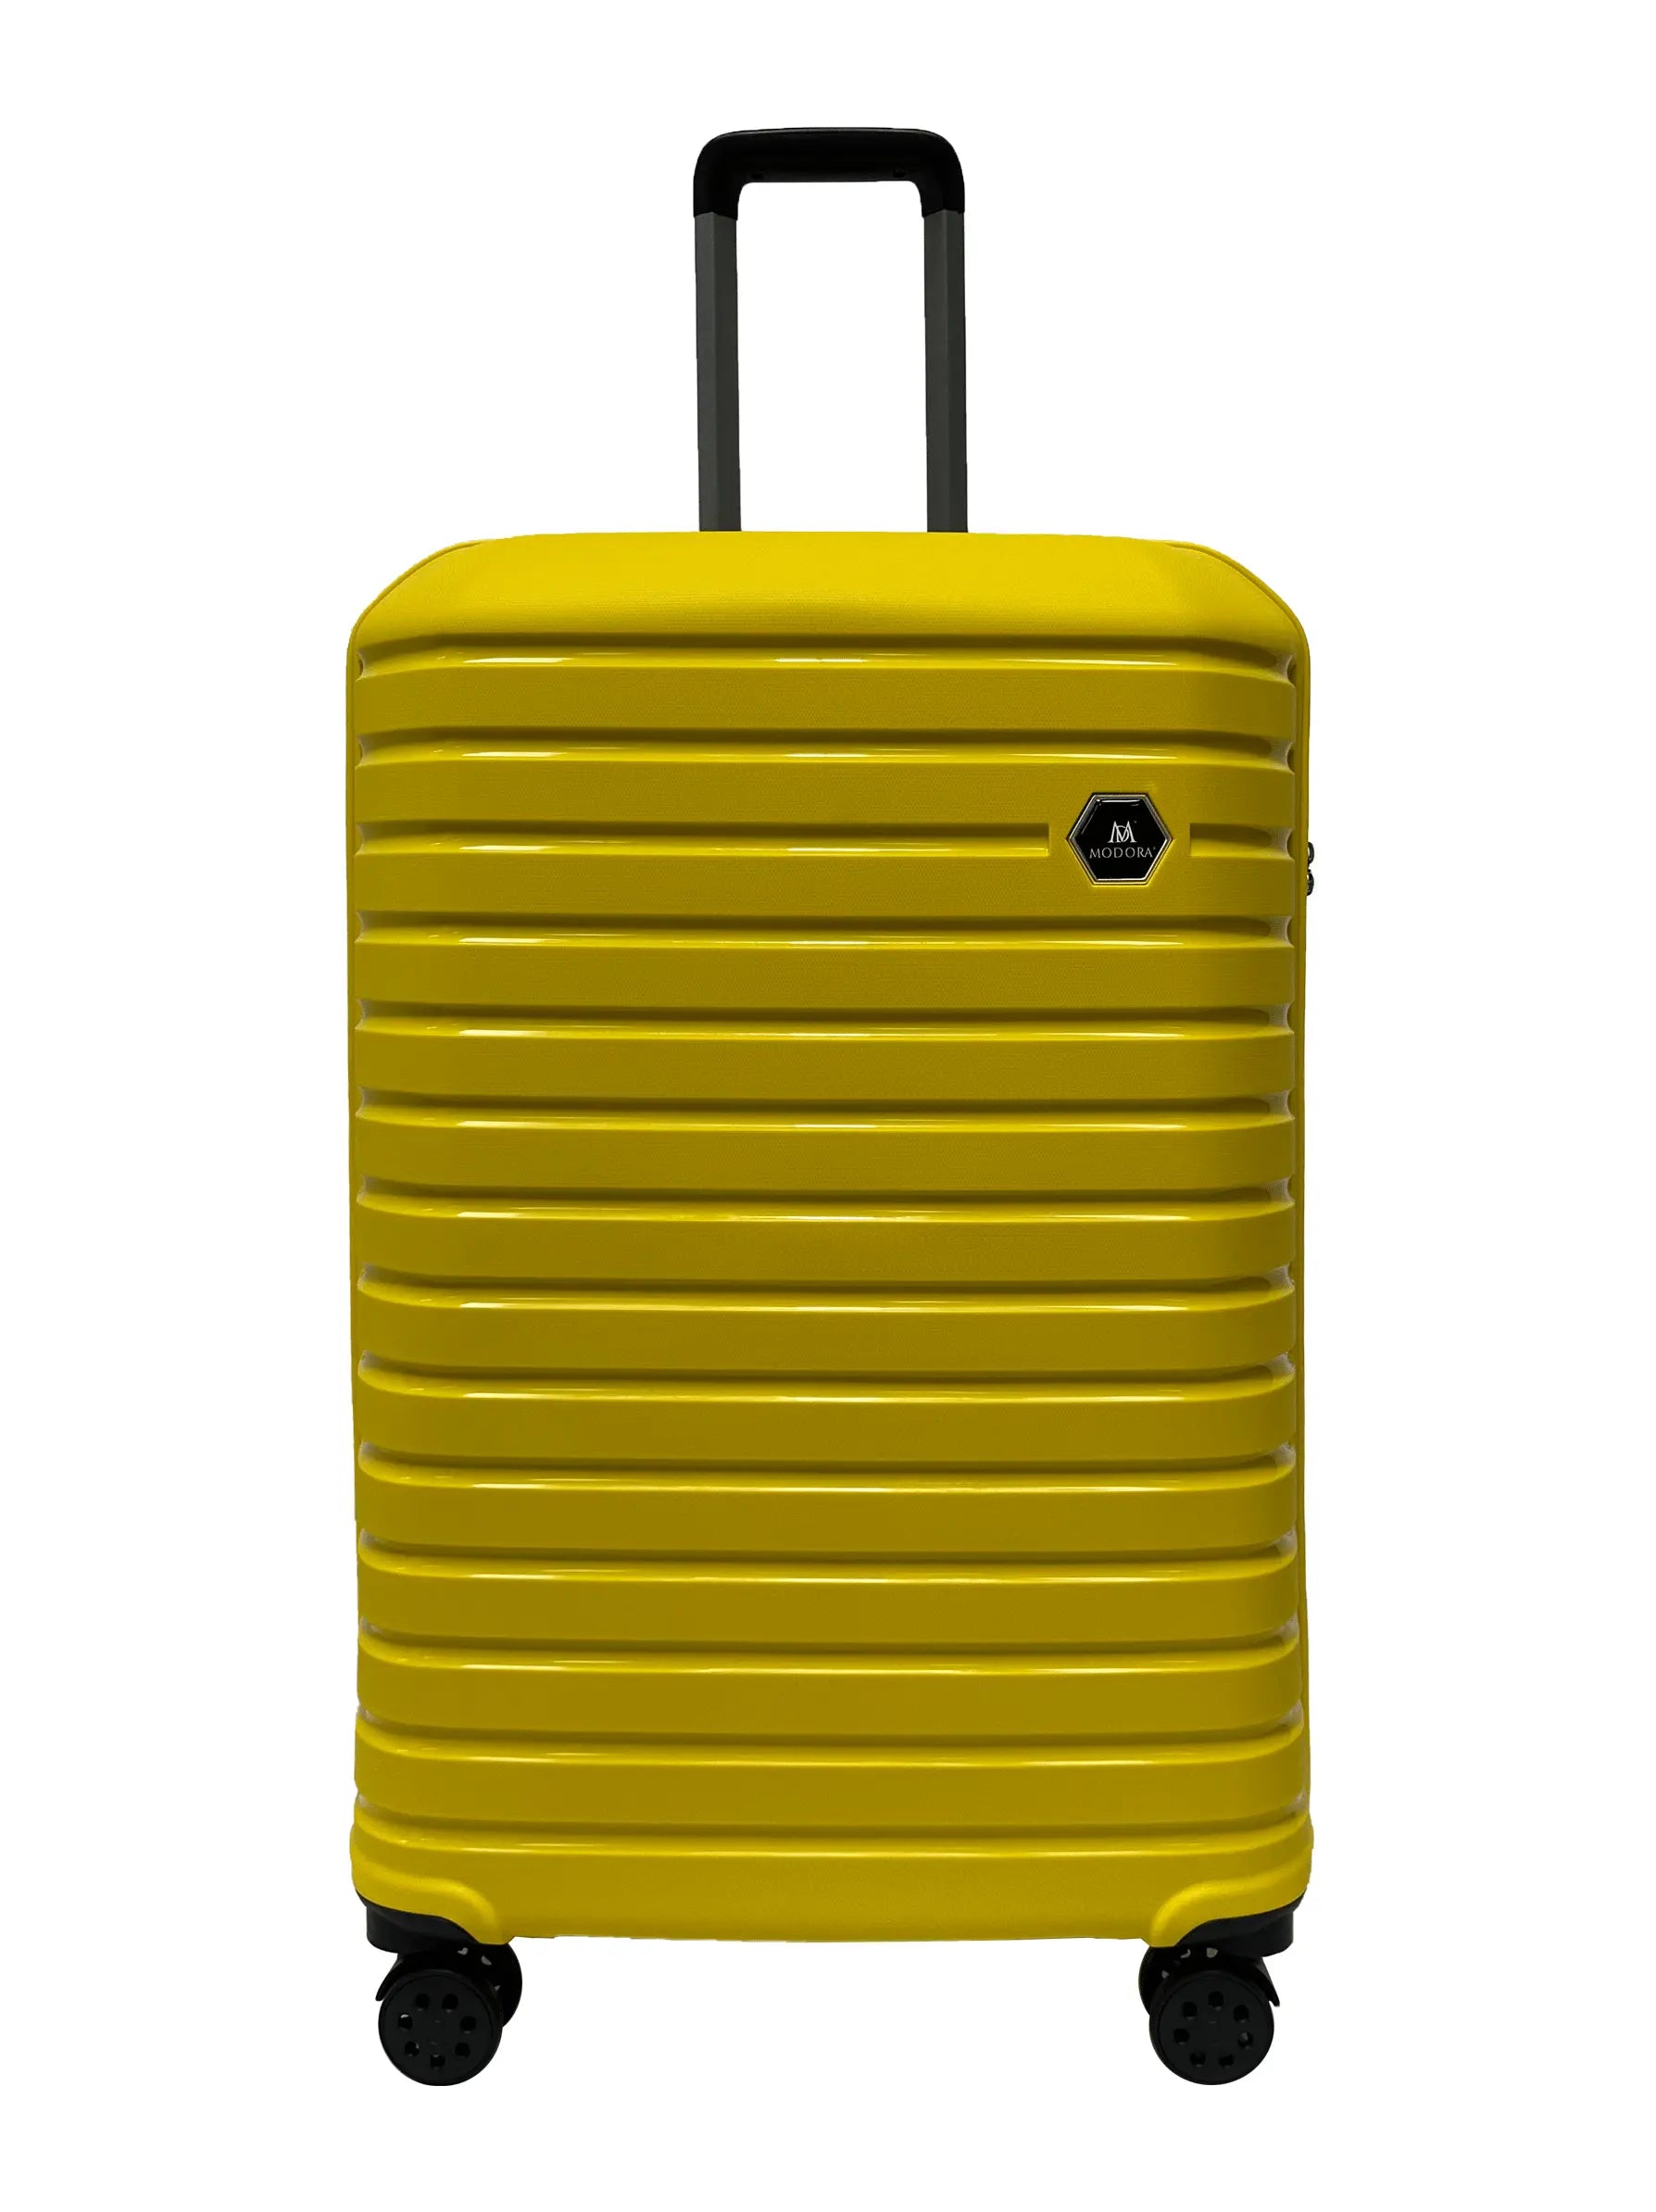 Large yellow suitcase